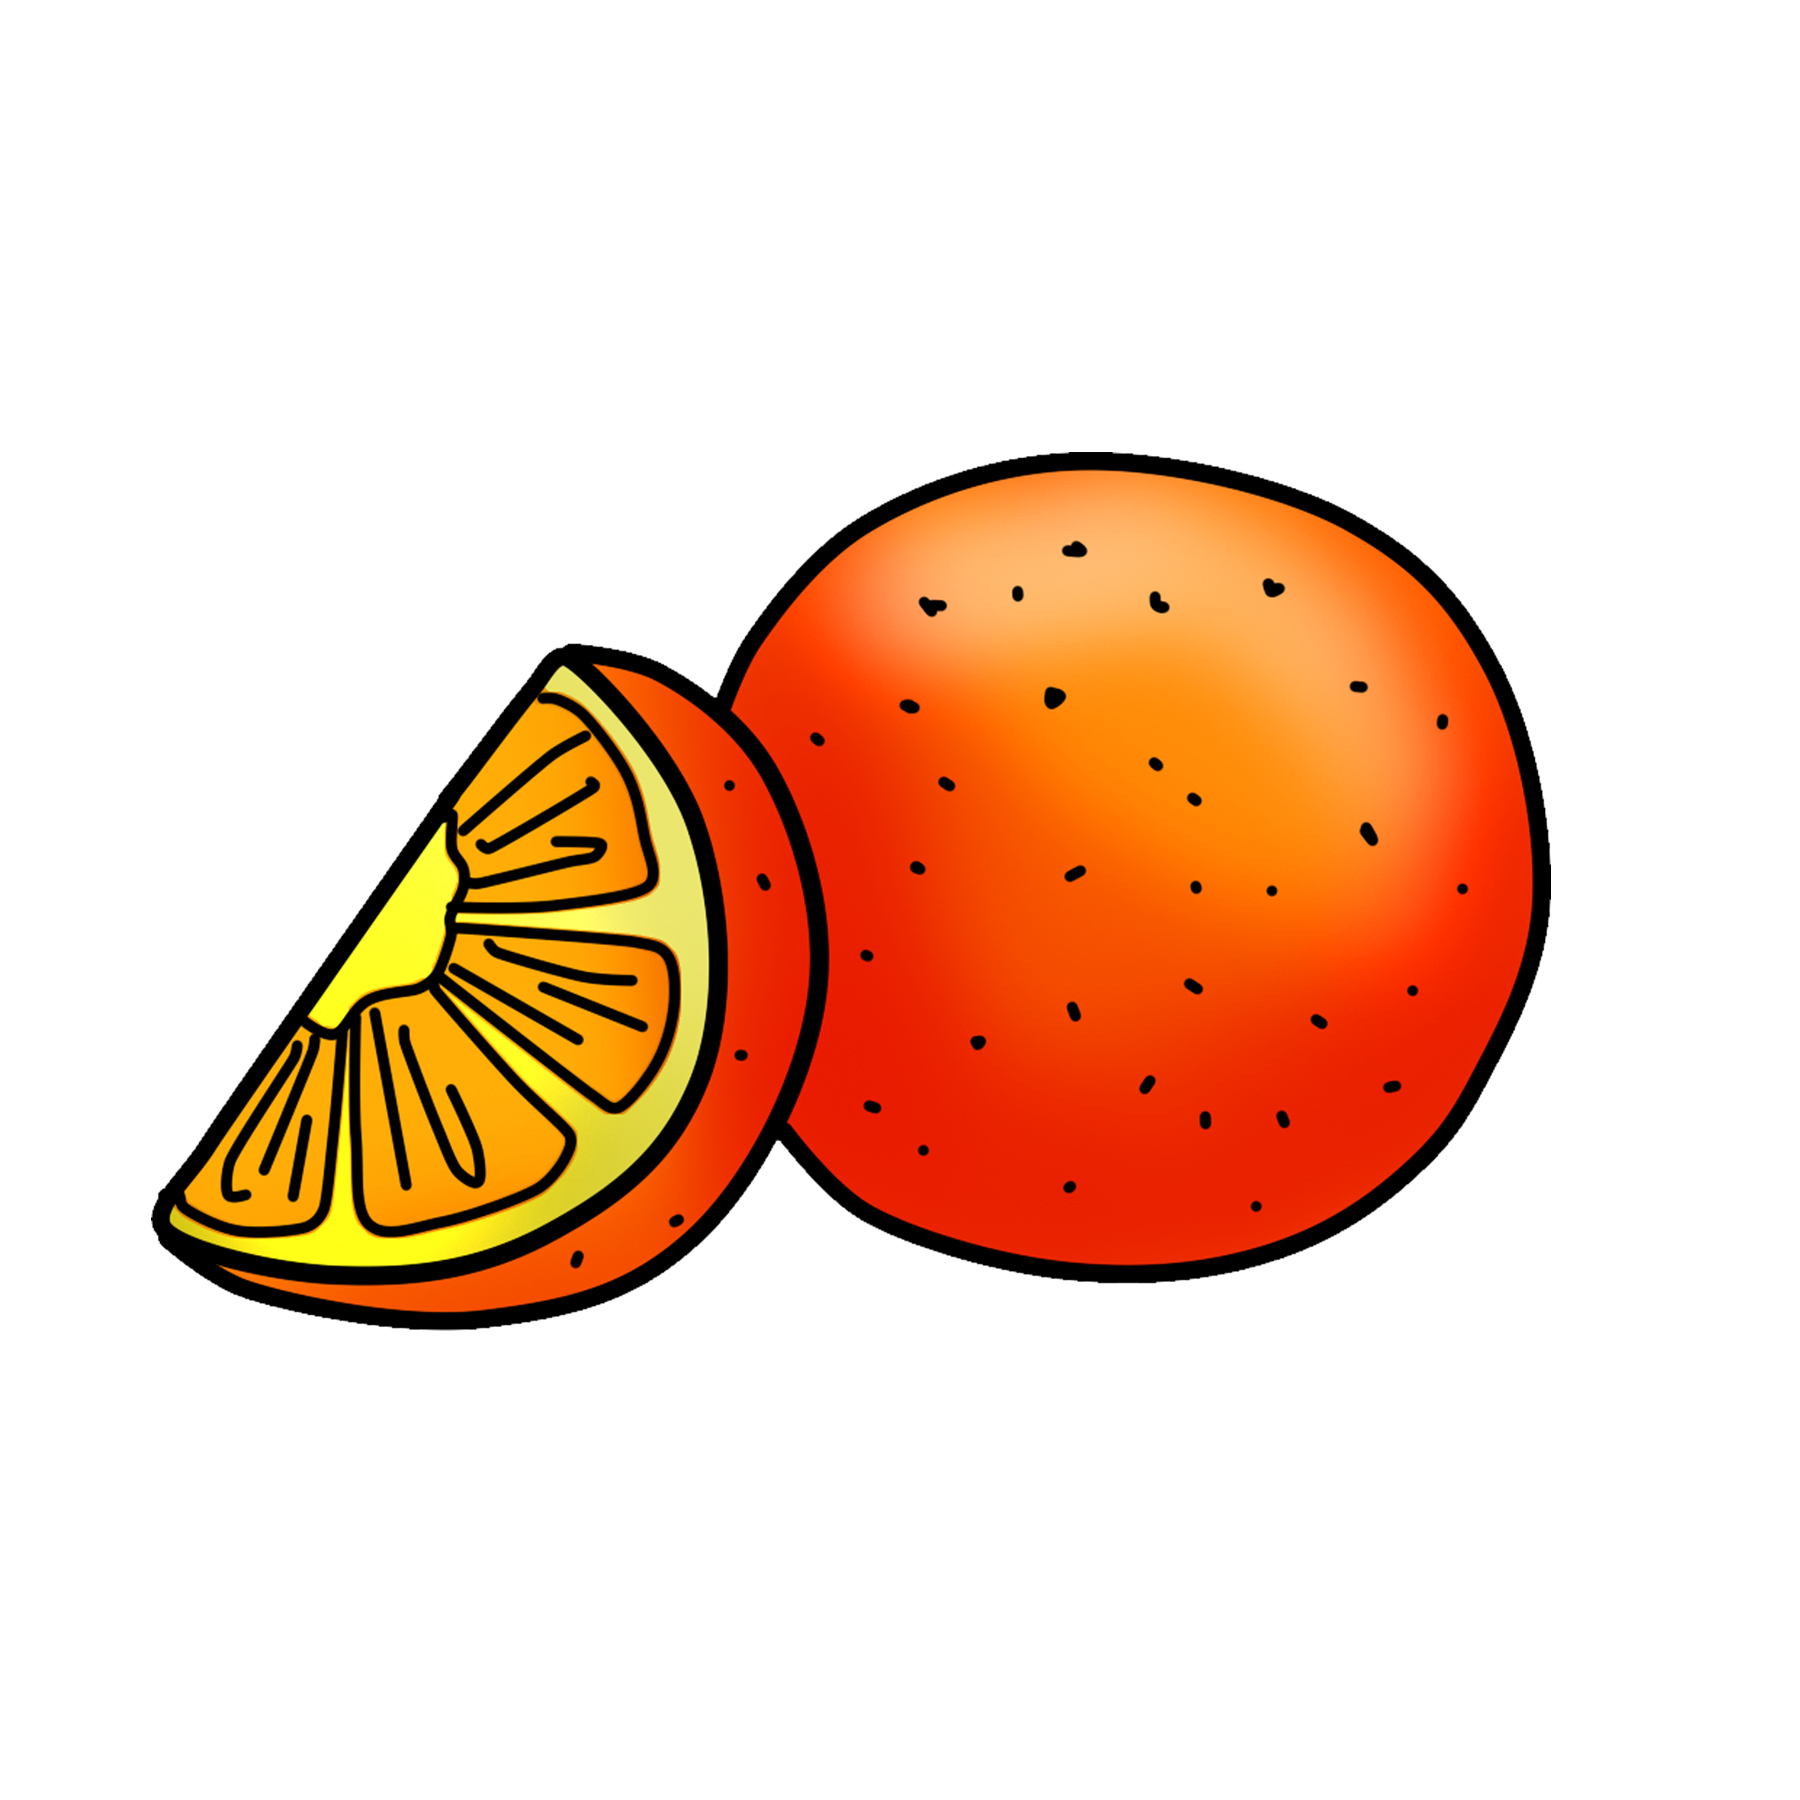 Clip Art Orange